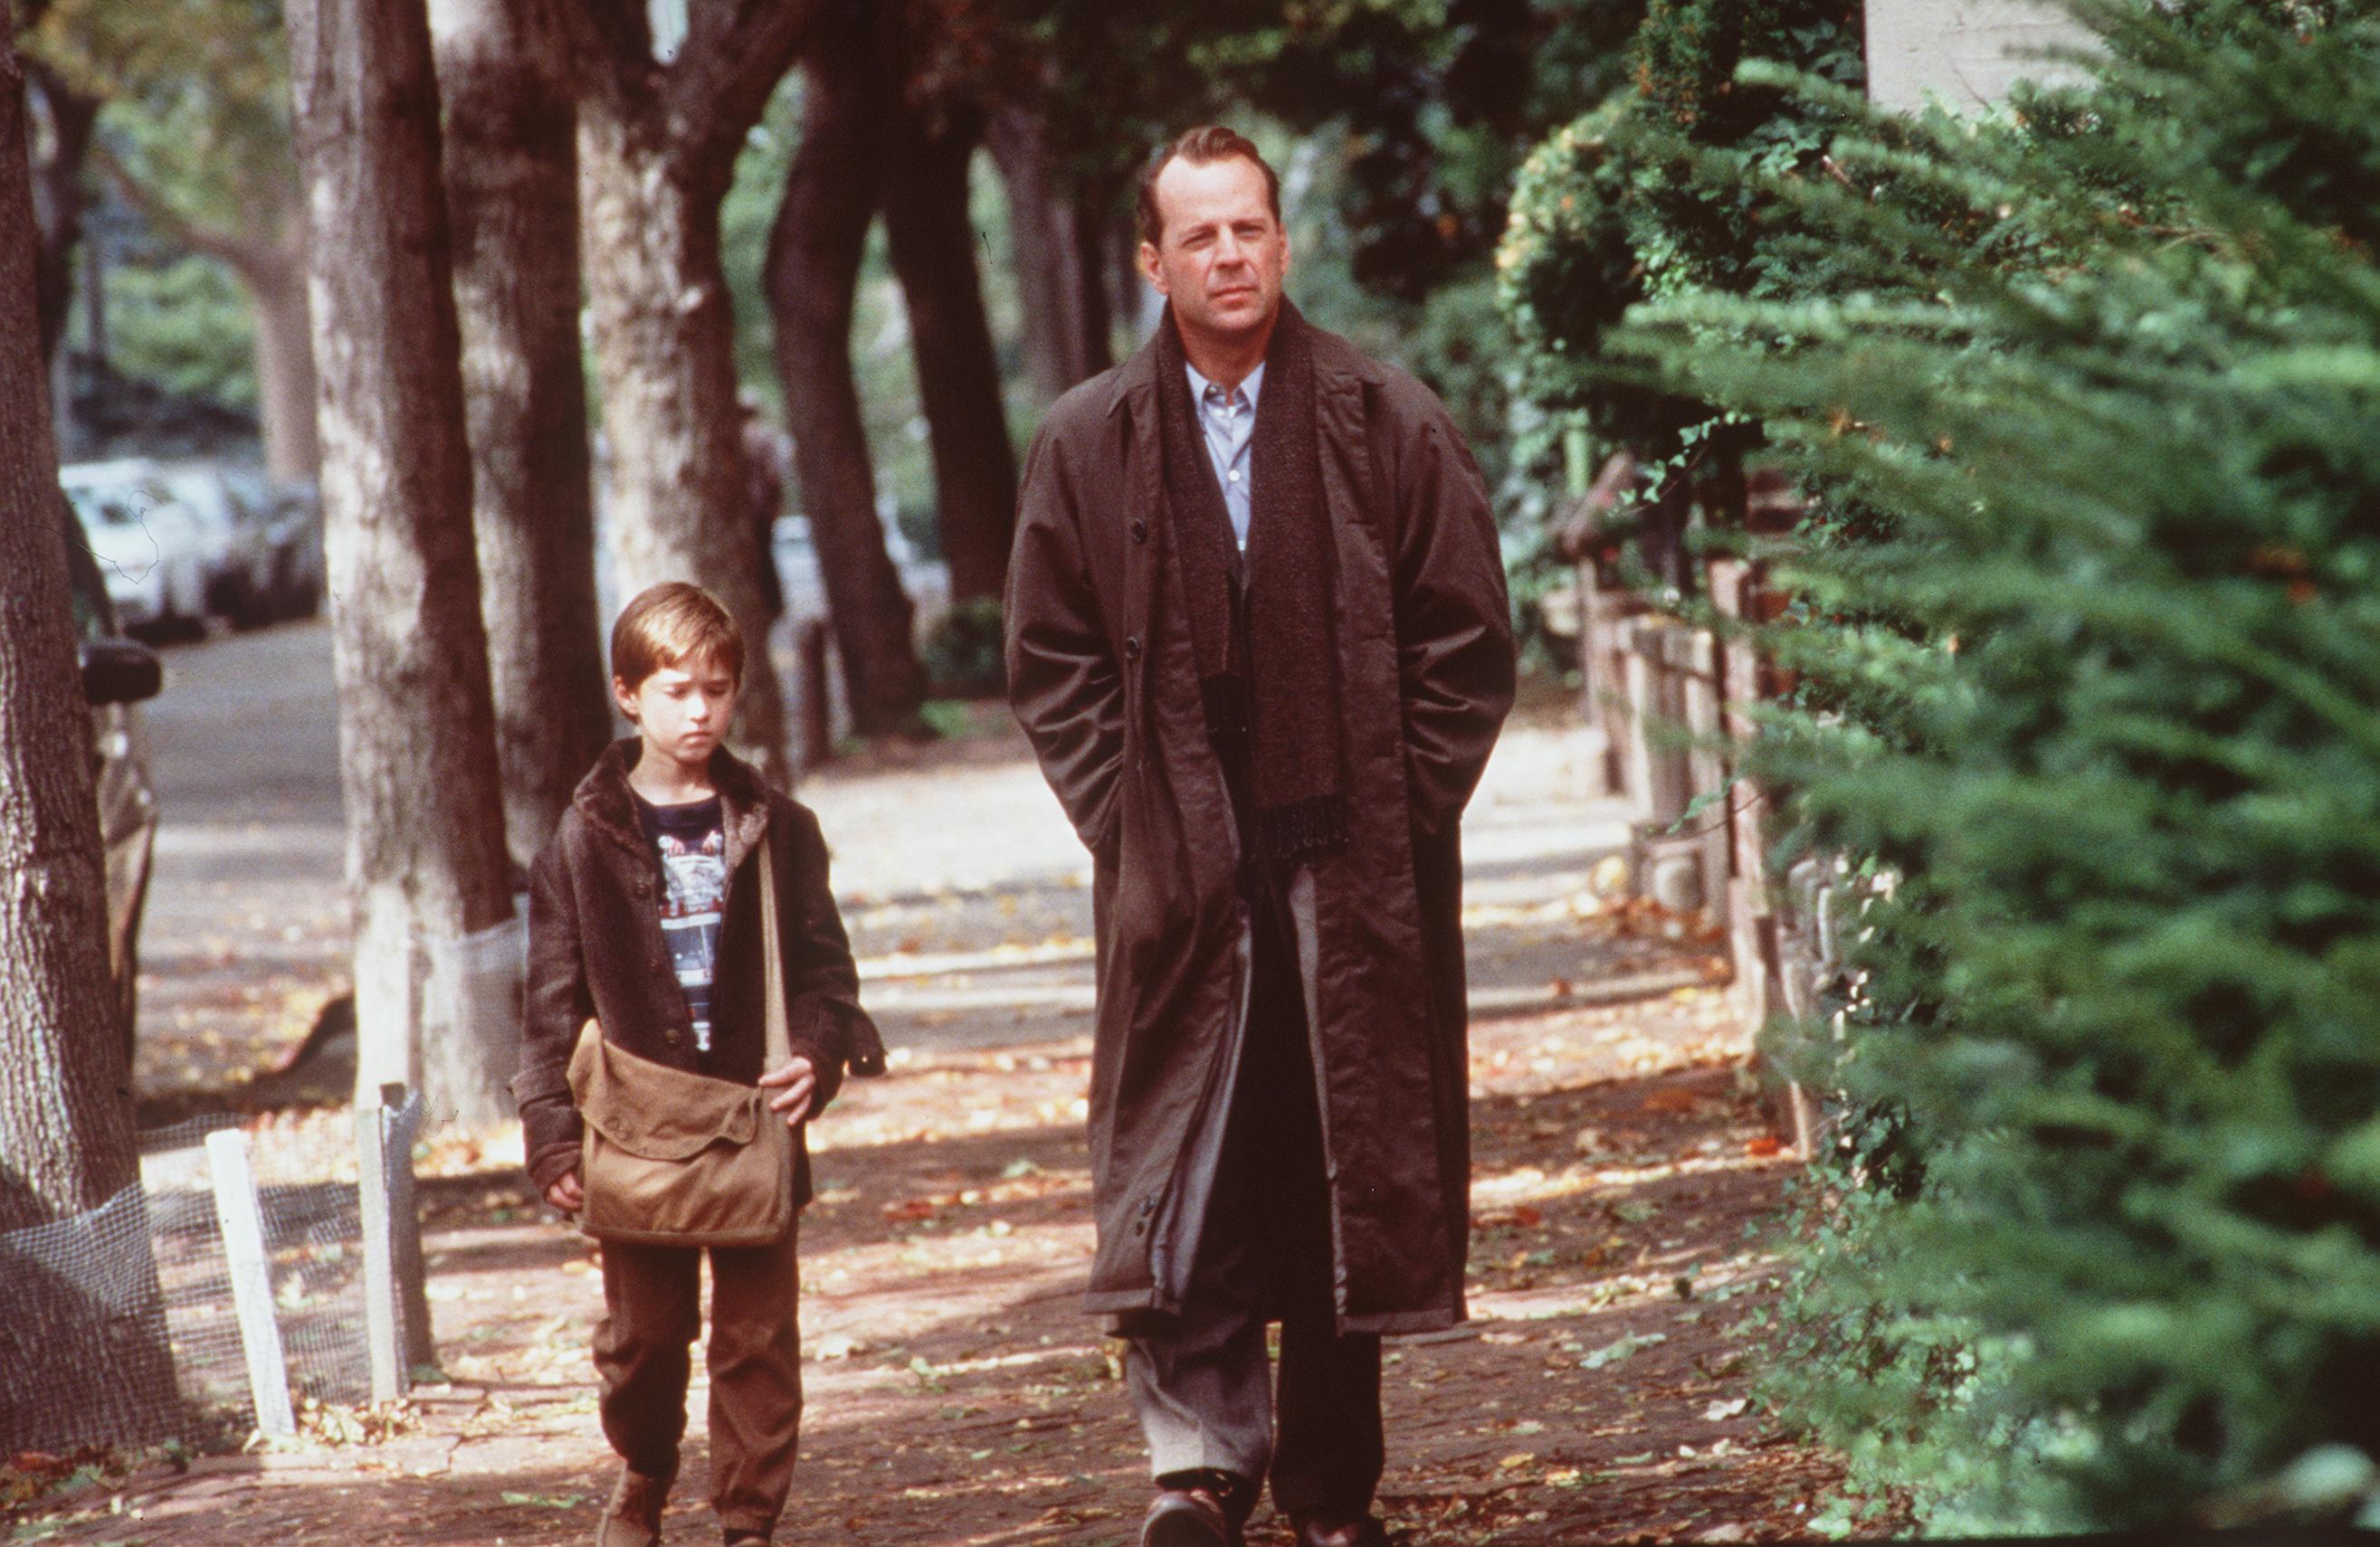 L'enfant star et Bruce Willis sur le plateau de tournage du "Sixième sens", 1999 | Source : Getty Images